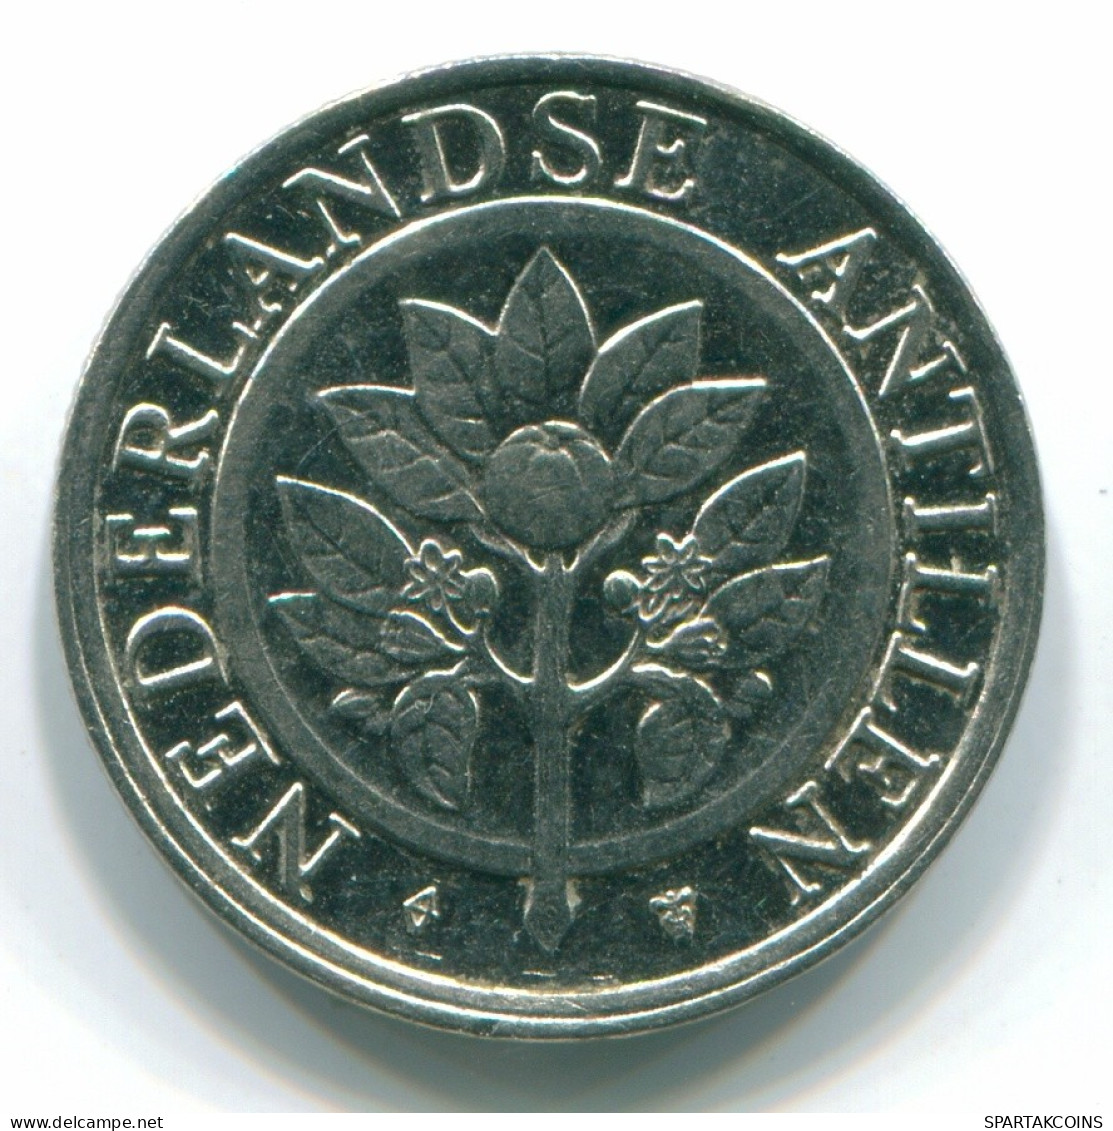 25 CENTS 1990 NETHERLANDS ANTILLES Nickel Colonial Coin #S11259.U.A - Antillas Neerlandesas